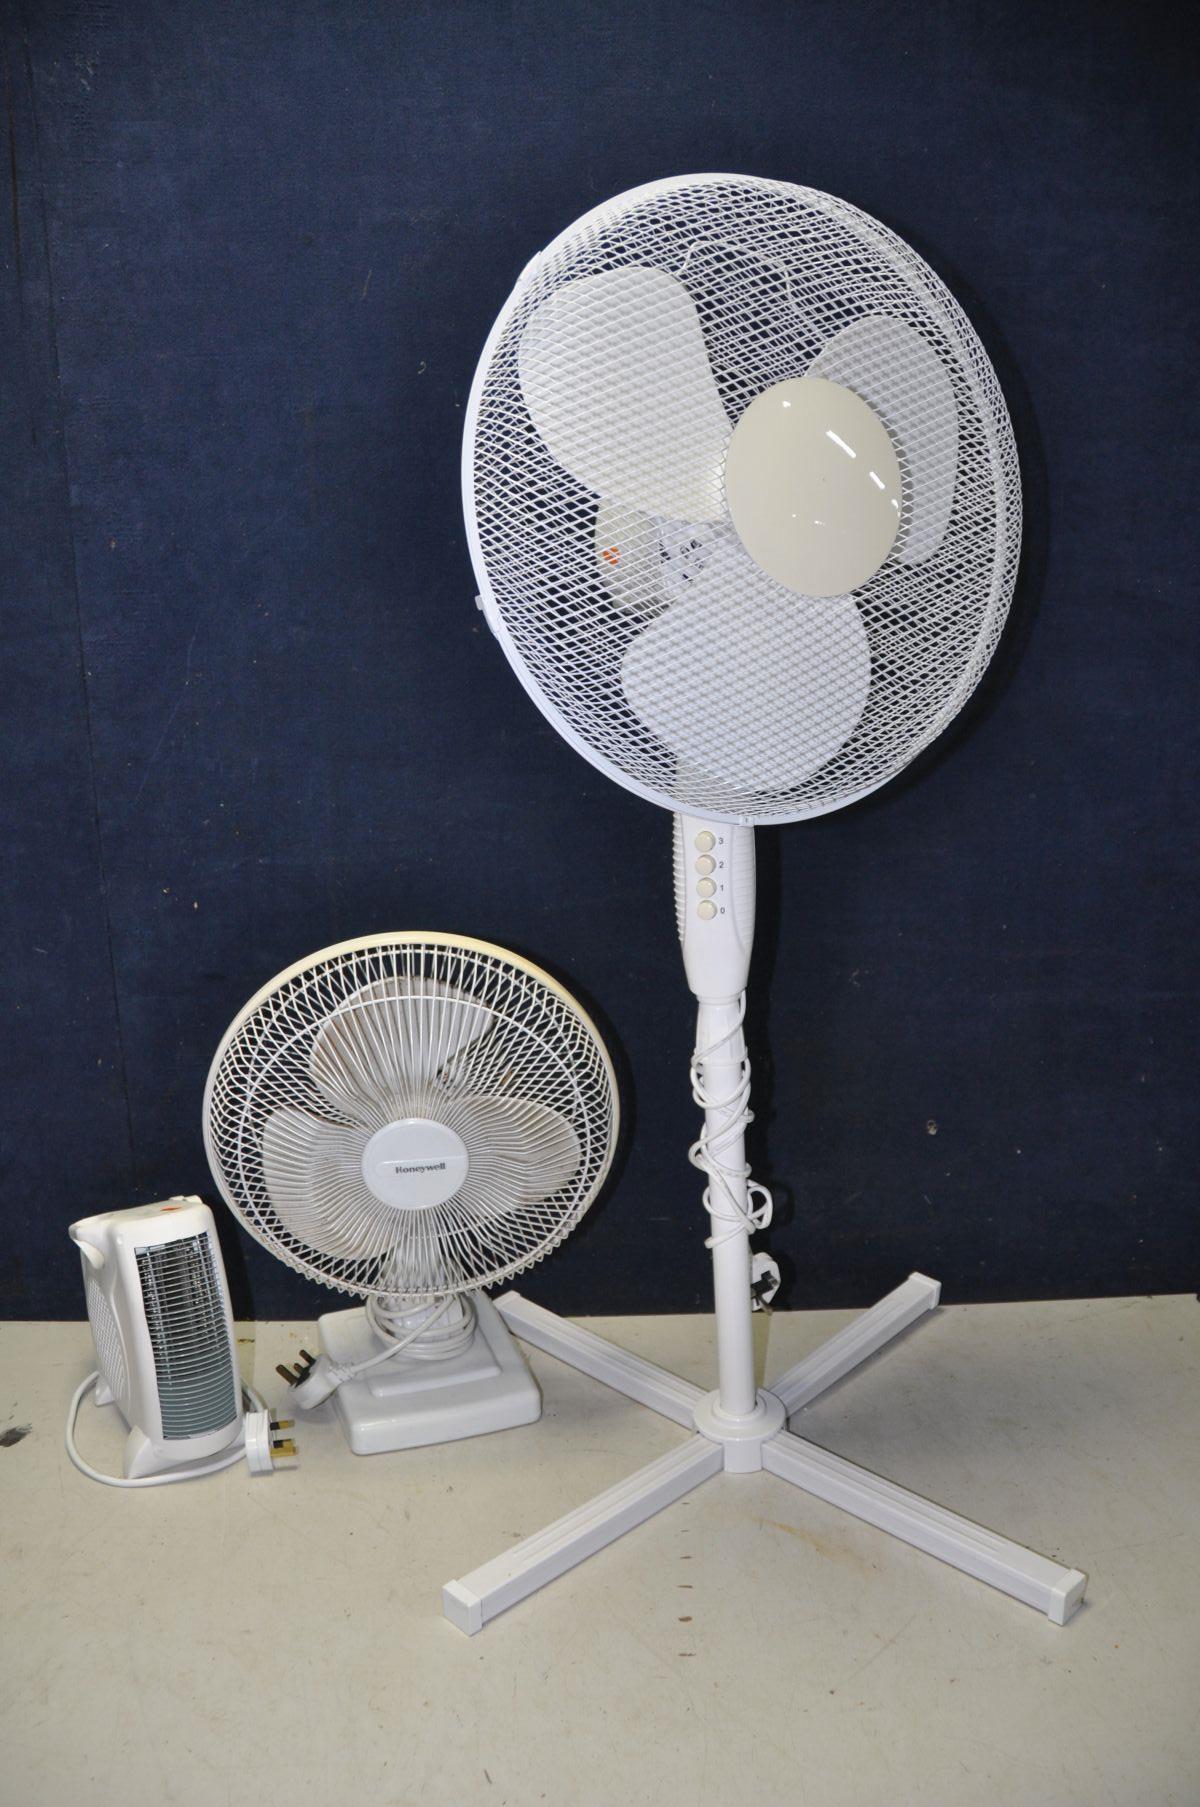 THREE FANS to include a unbranded 16in standing fan model No FS40-8JC, a Honeywell desk fan model No